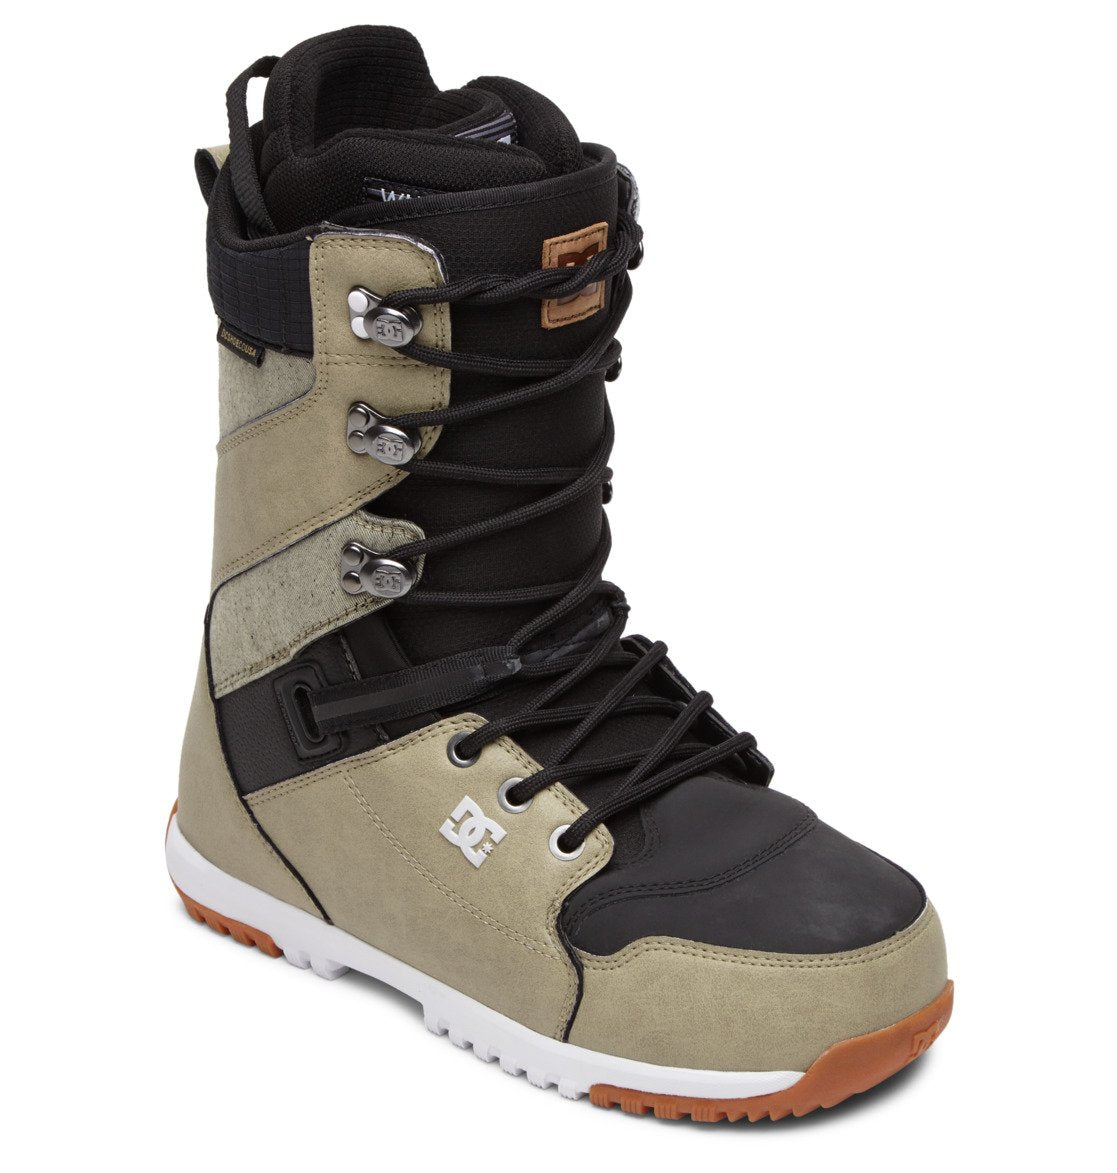 Alvast Misbruik Wordt erger DC Shoes Men's Mutiny Lace Up Snowboard Boot – eXit outdoors